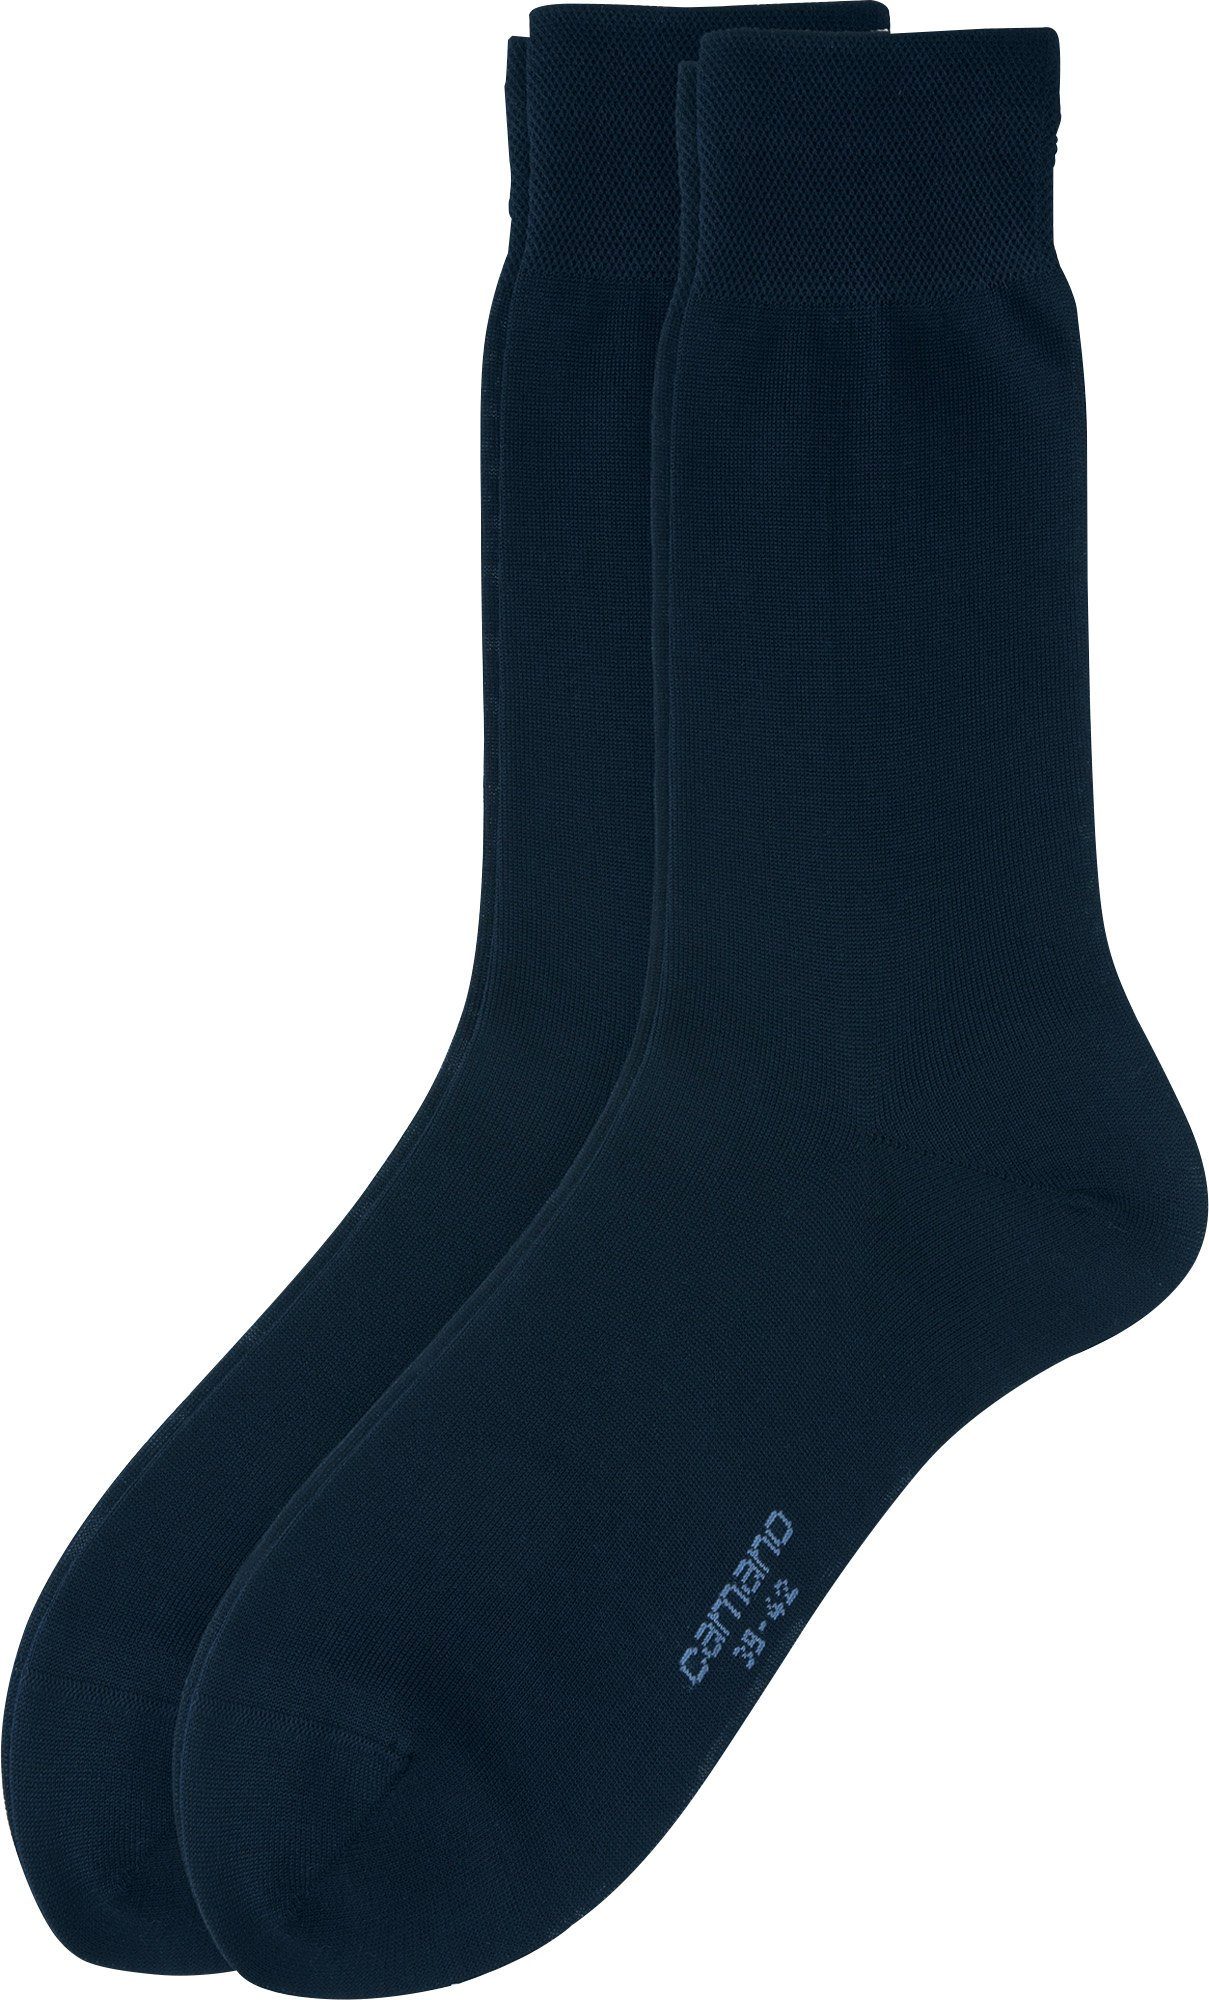 Camano Socken Herren Business-Socken 2 Paar Uni dunkelblau